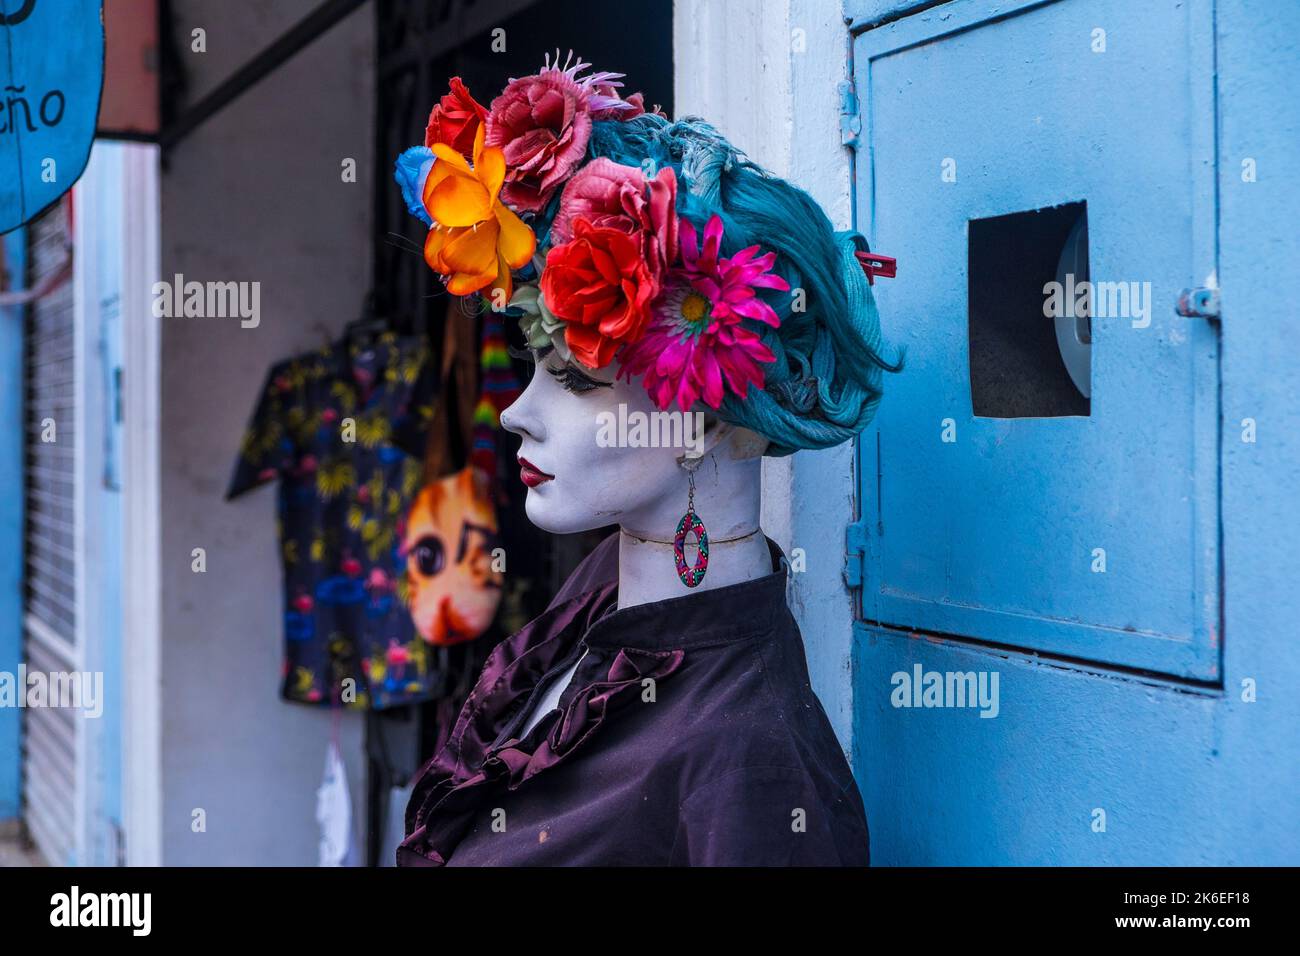 Manichino con fiori colorati sulla testa fuori da un negozio Foto Stock